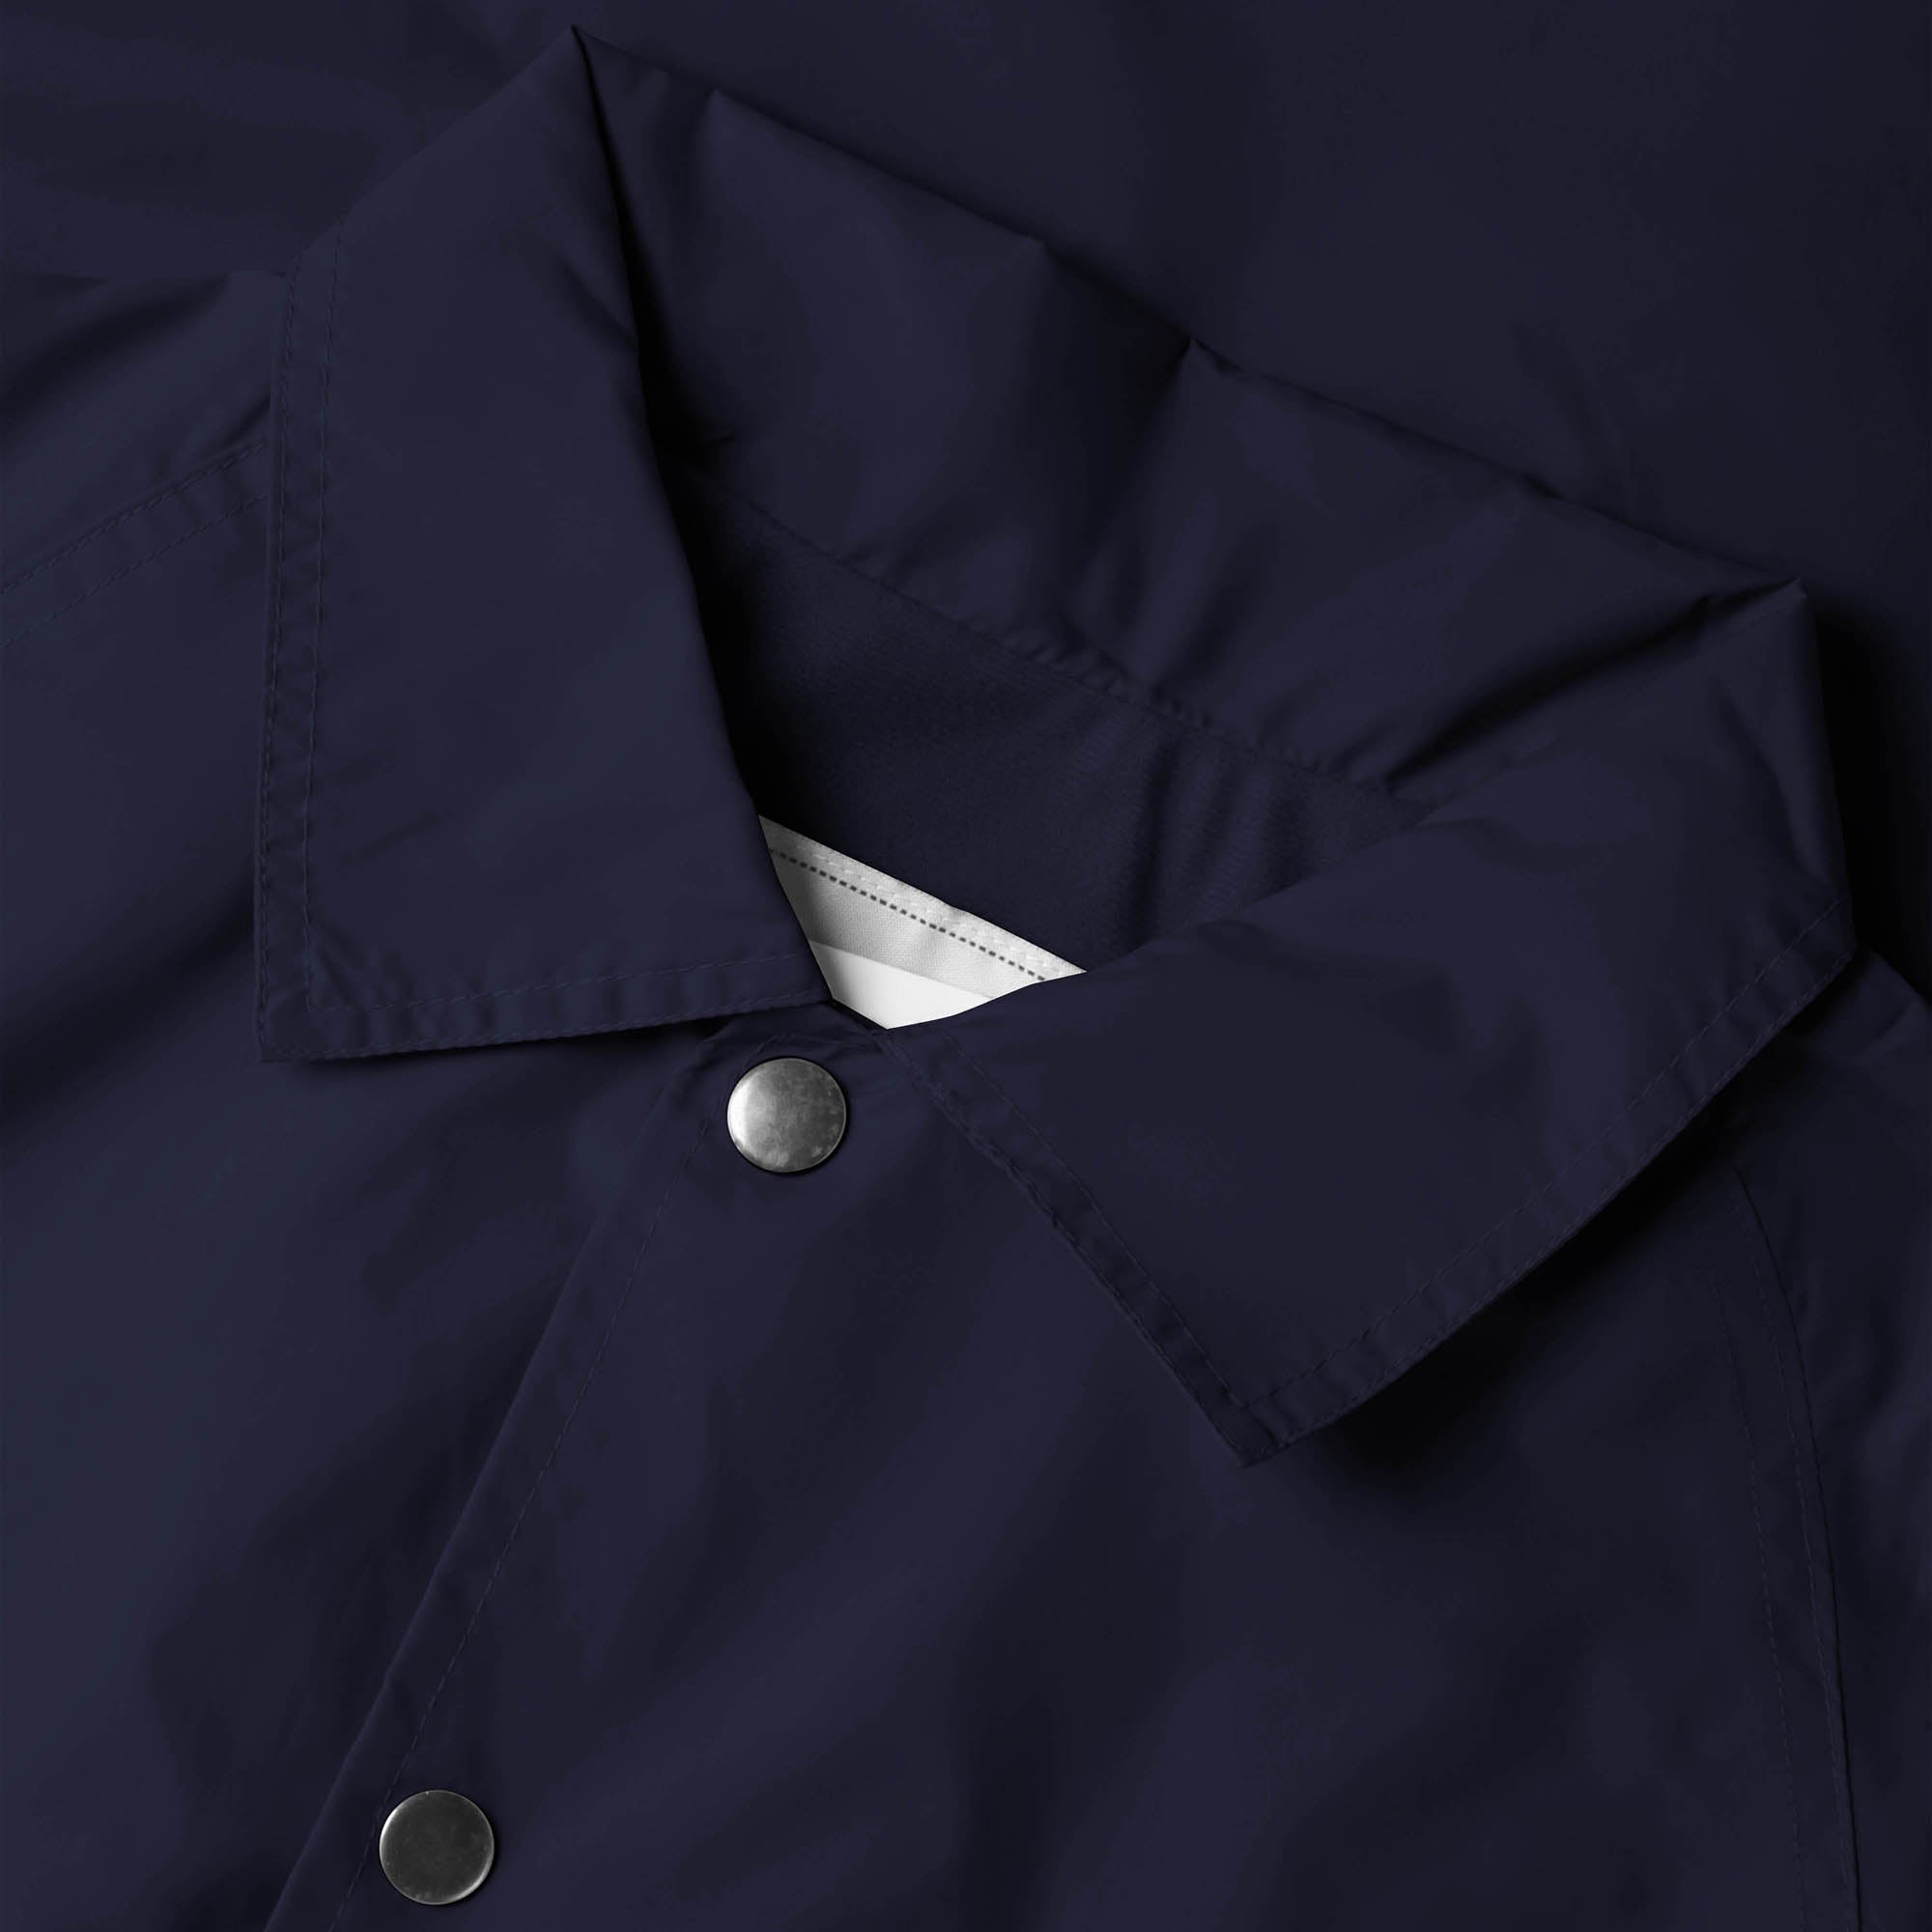 waterproof jacket_waterproofs_mens waterproof jacket_best rain jacket_lightweight waterproof jacket_water resistant jacket_Navy